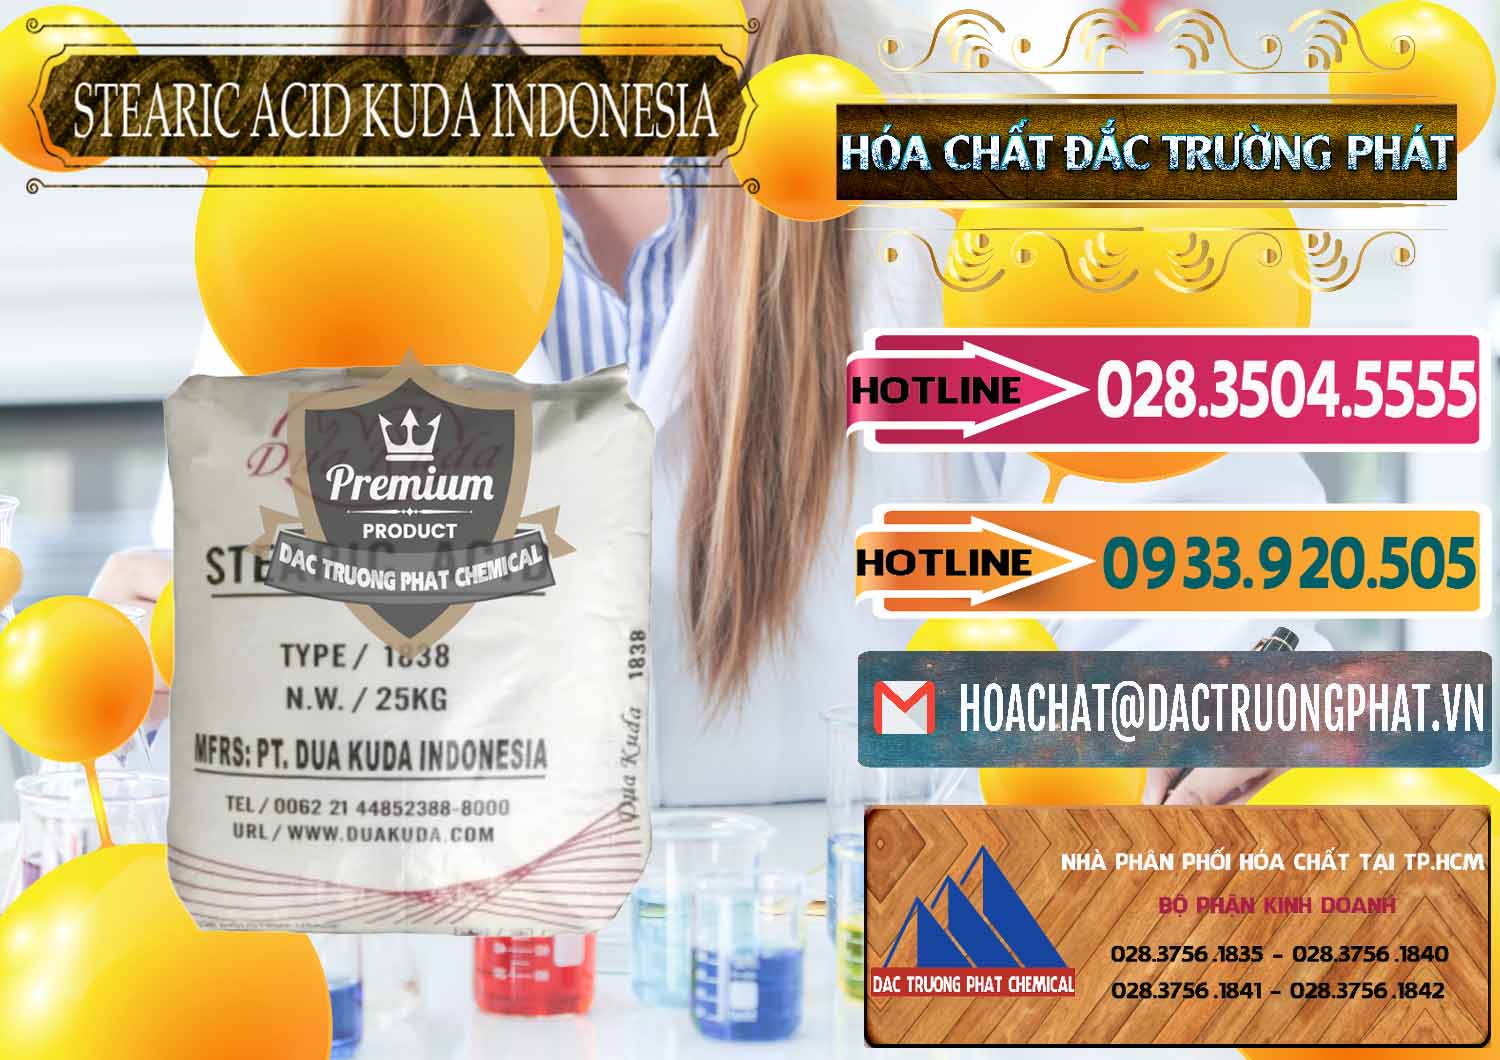 Nhập khẩu ( bán ) Axit Stearic - Stearic Acid Dua Kuda Indonesia - 0388 - Cty kinh doanh ( phân phối ) hóa chất tại TP.HCM - dactruongphat.vn